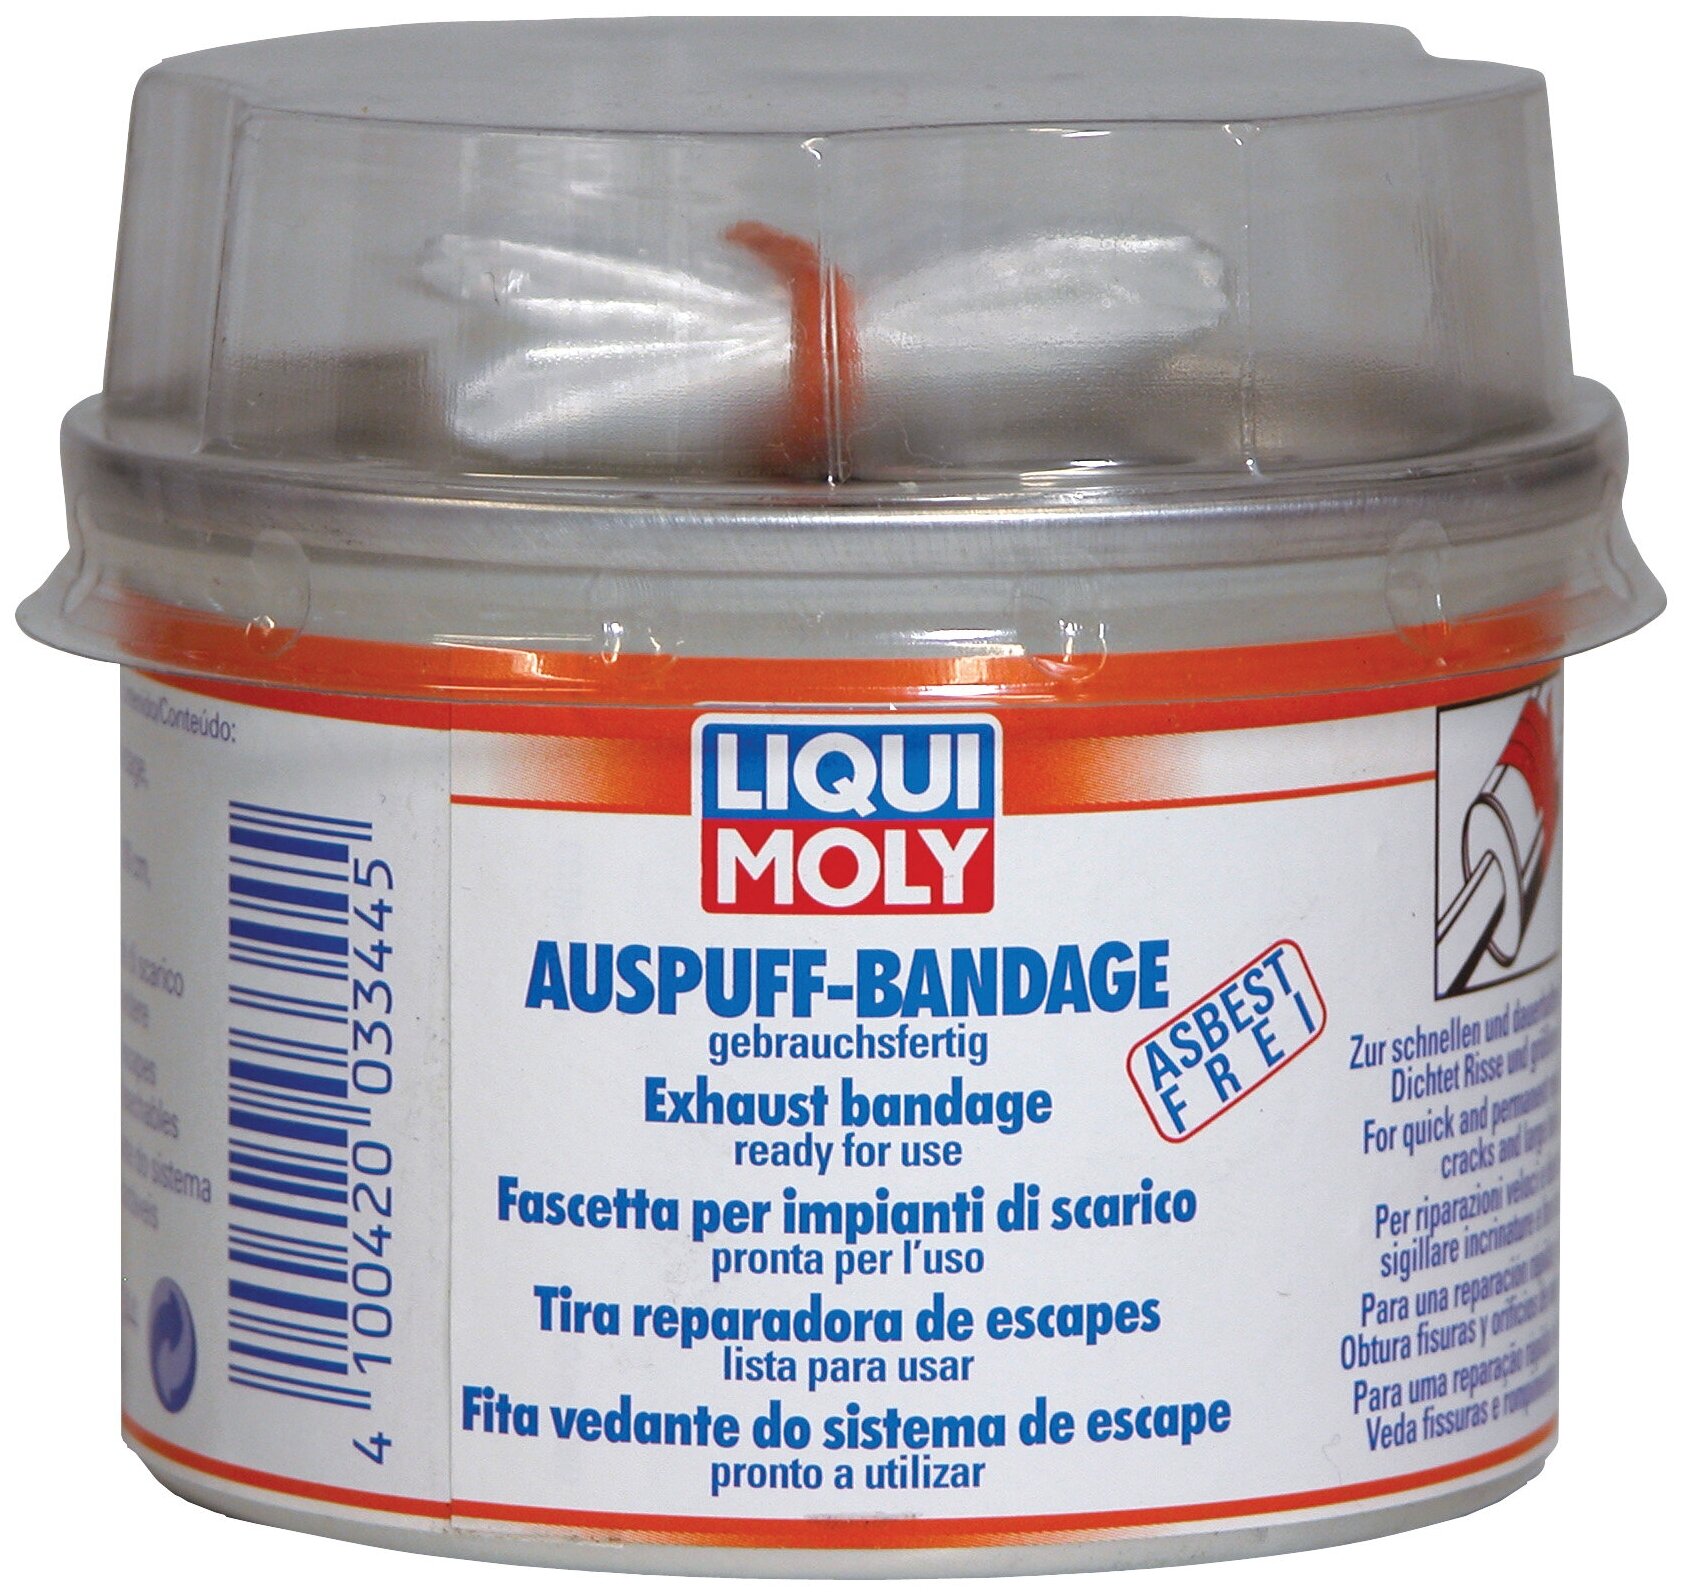      LIQUI MOLY Auspuff-Bandage gebrauchsfertig 1 